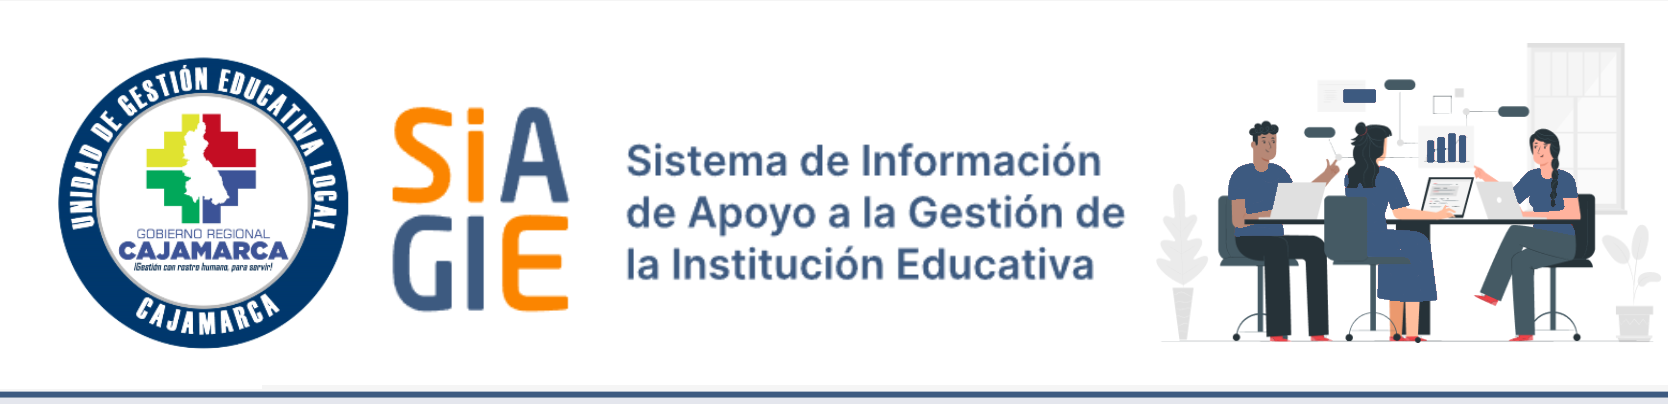 La unidad de Gestión Educativa Local Cajamarca hace llegar la invitación a nuestros Directores de todas las Instituciones Educativas Públicas de todos los Niveles Educativos de Educación Básica Regular, beneficiadas con Materiales Educativos en el año 2024; a participar de la Jornada de Capacitaciones denominada “Registro de Recepción y Asignación de Materiales Educativos en la plataforma SIAGIE 2024”, los días 18 y 19 de abril del presente año, en el auditorio de la institución educativa 015 “Santa Teresita”.